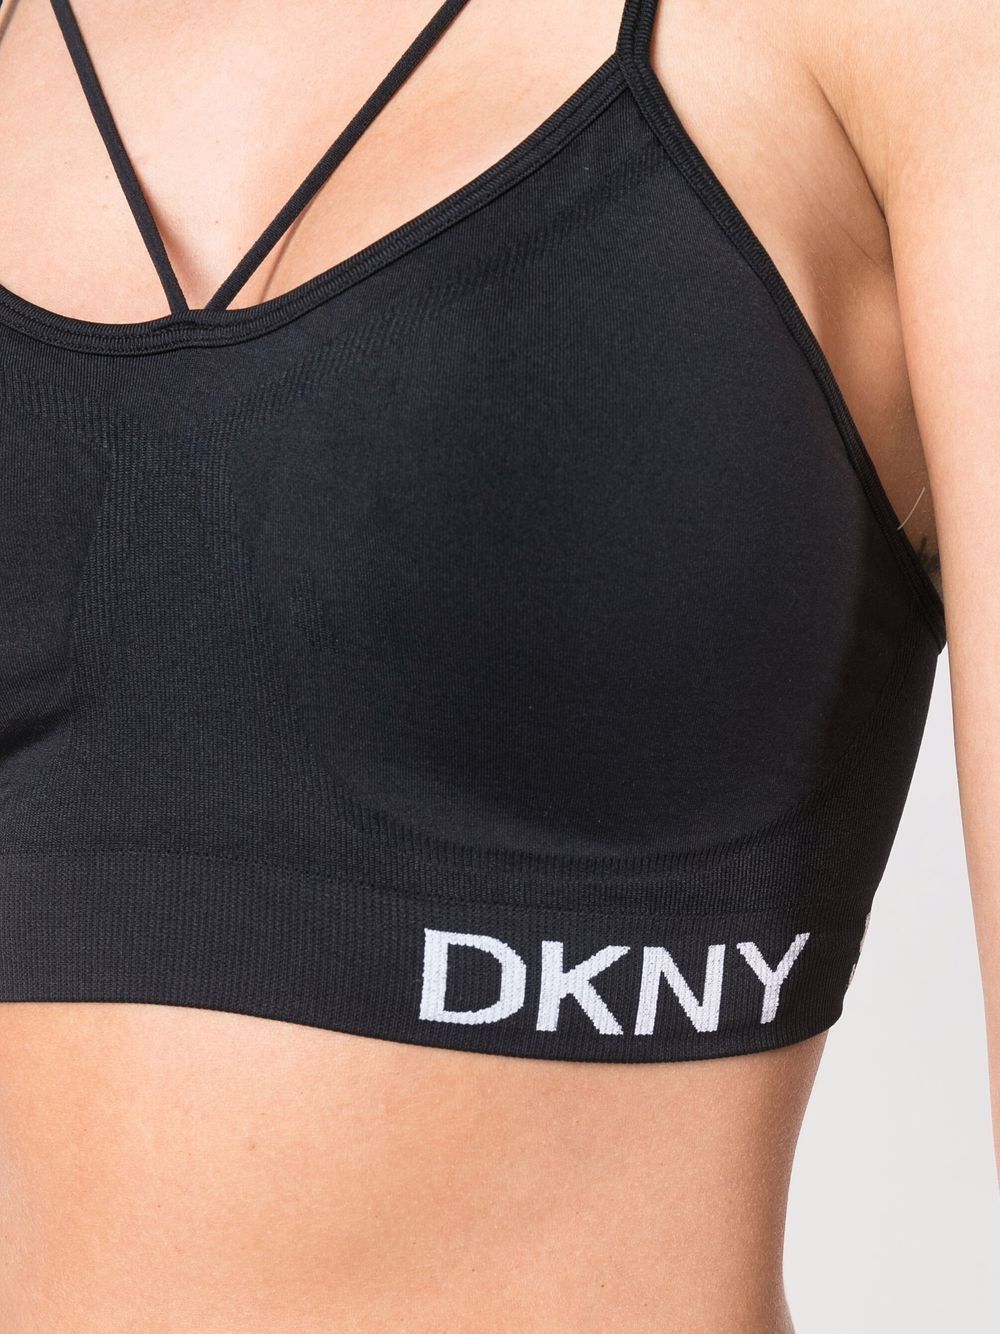 DKNY Womens Sport Seamless Strappy Bra